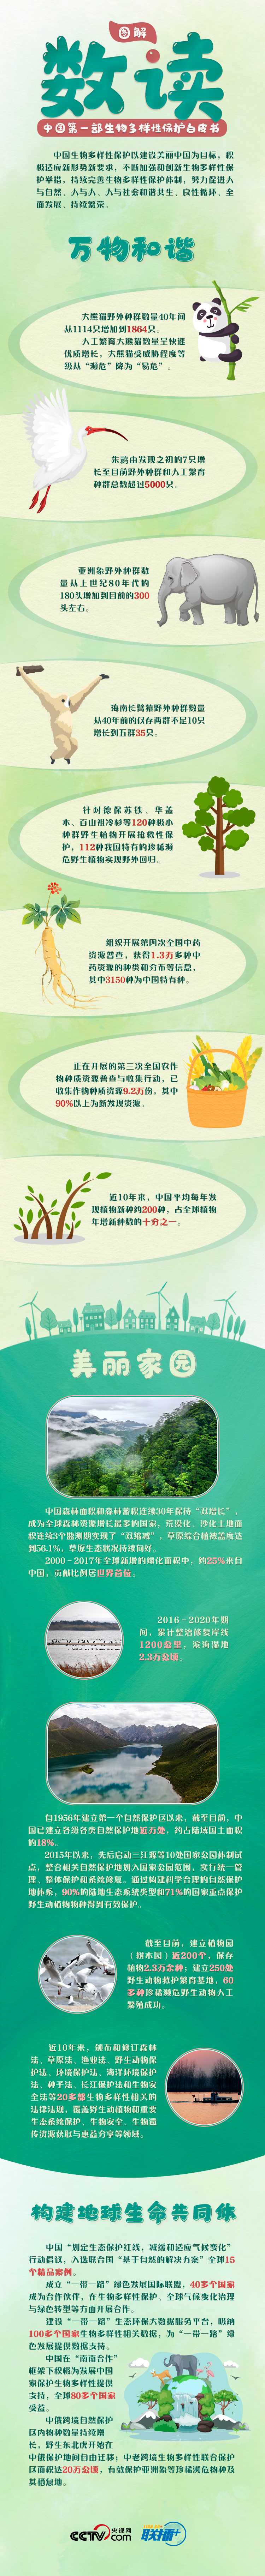 我们的共同家园 | COP15来了！中国首发新领域白皮书 惊喜多看点足